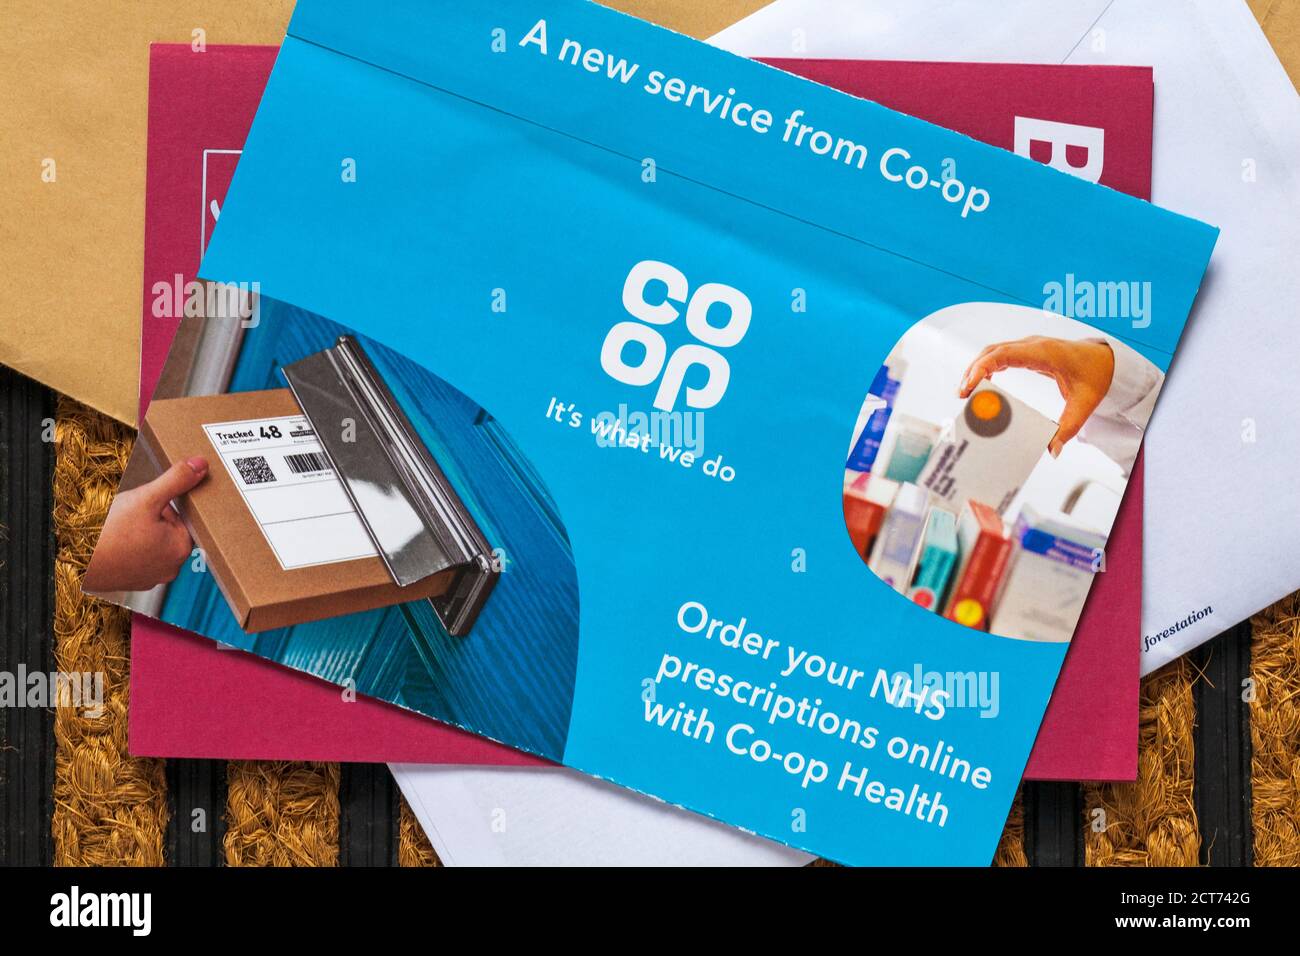 Courrier indésirable courrier indésirable sur le paillasson - Coop commandez votre NHS prescriptions en ligne avec Co-Op Health un nouveau service de Co-op Banque D'Images